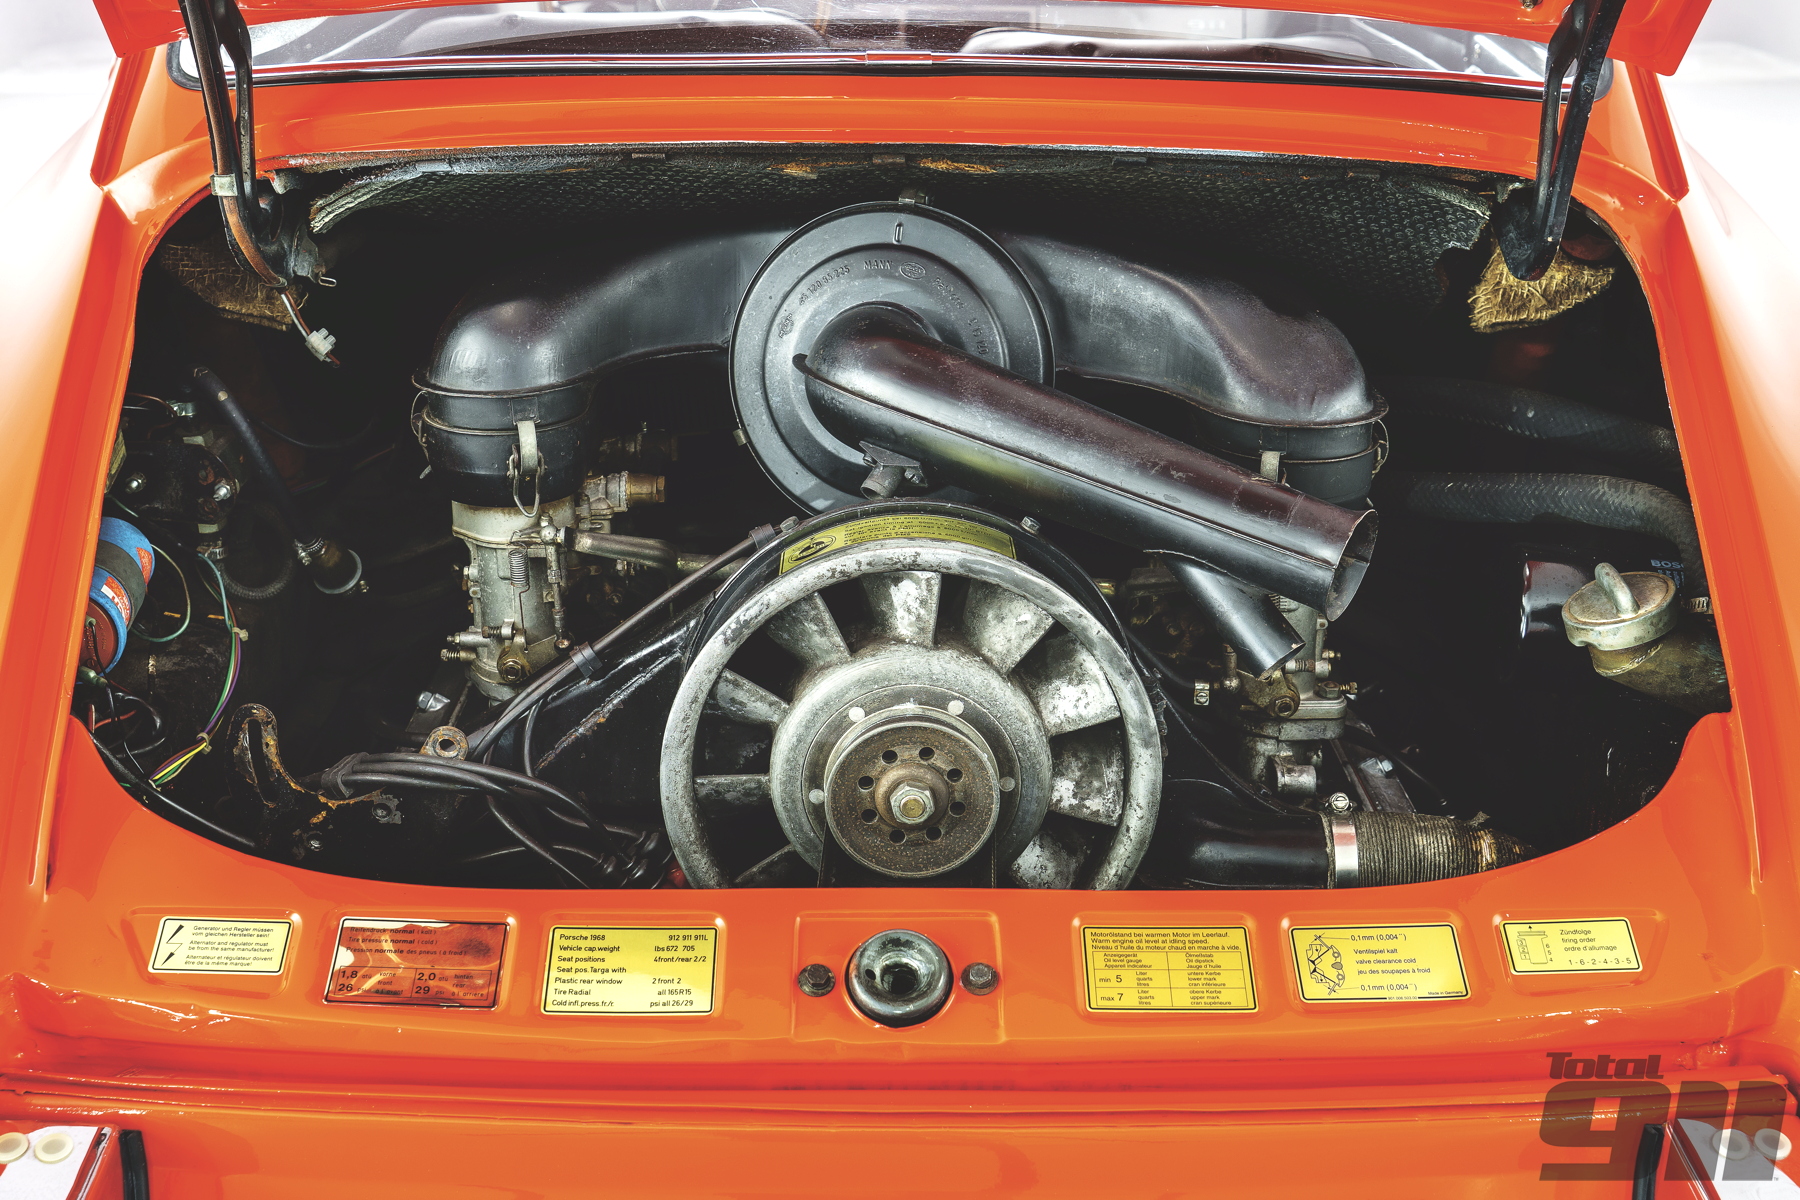 Porsche 911 Turbo S Engine